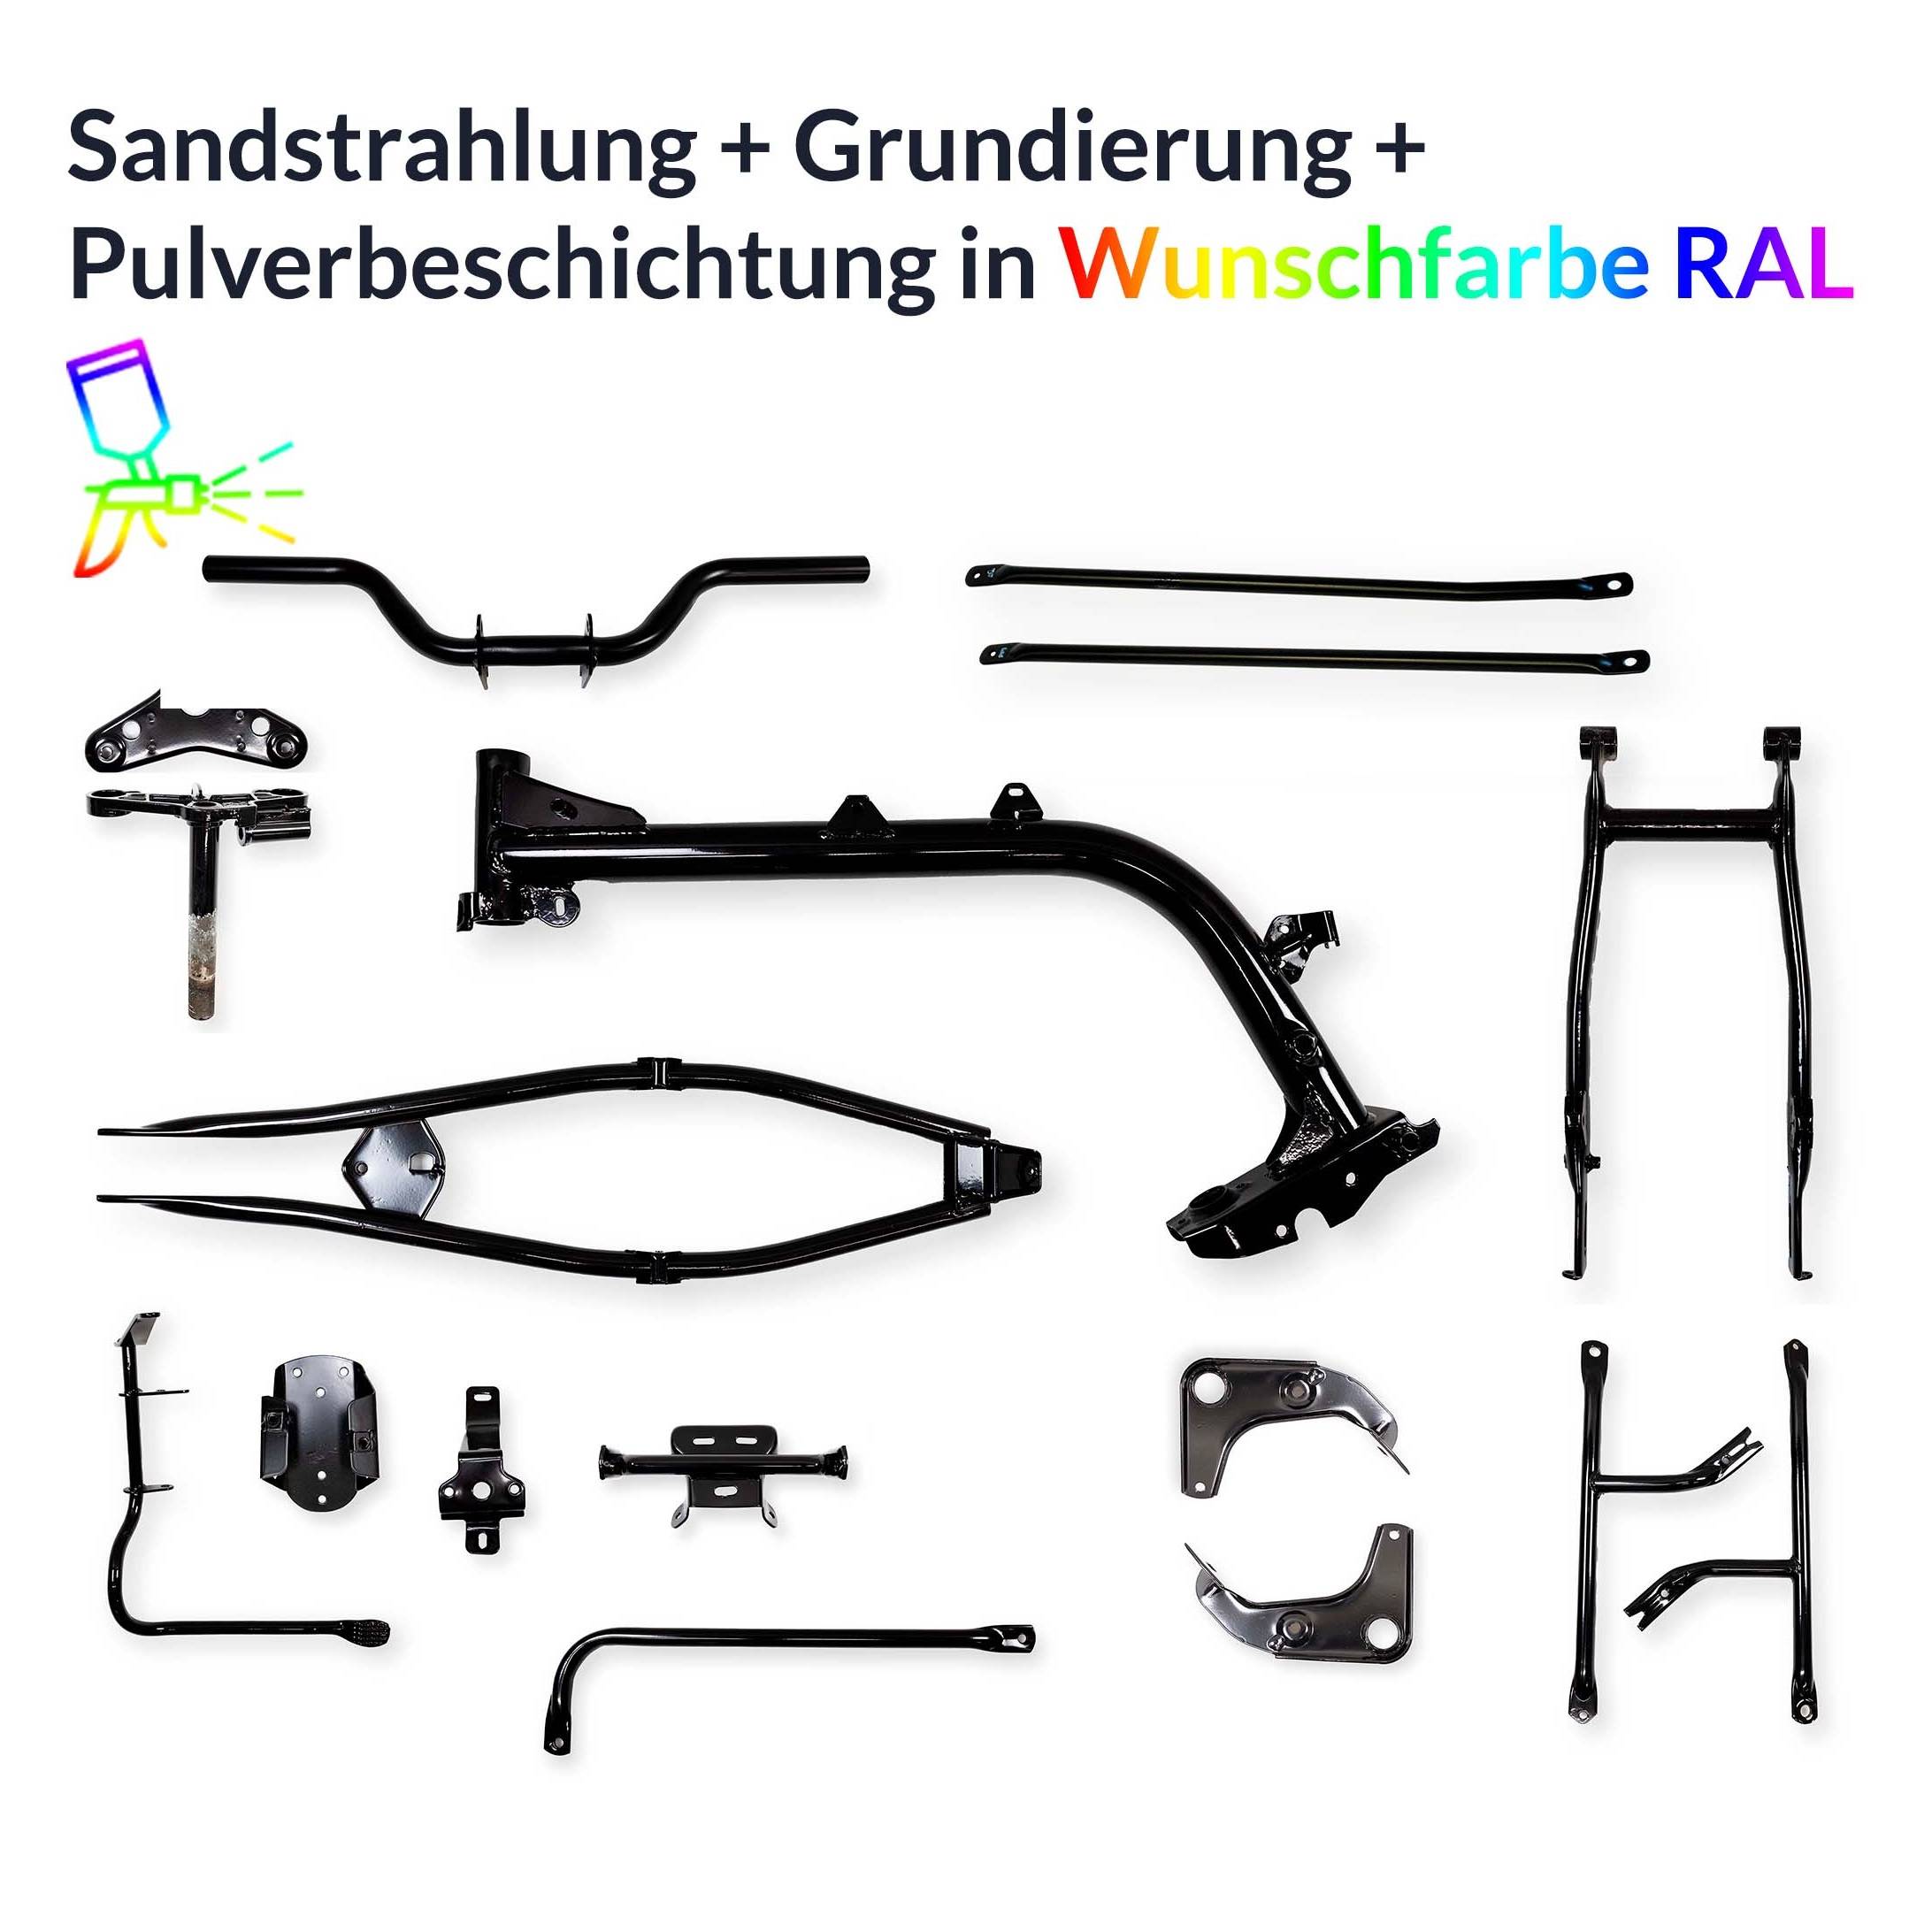 https://zeitmaschinen-shop.de/ger_pl_Pulverbeschichten-Service-Rahmen-Teile-Simson-S51-S50-in-Wunschfarbe-RAL-5681_3.jpg